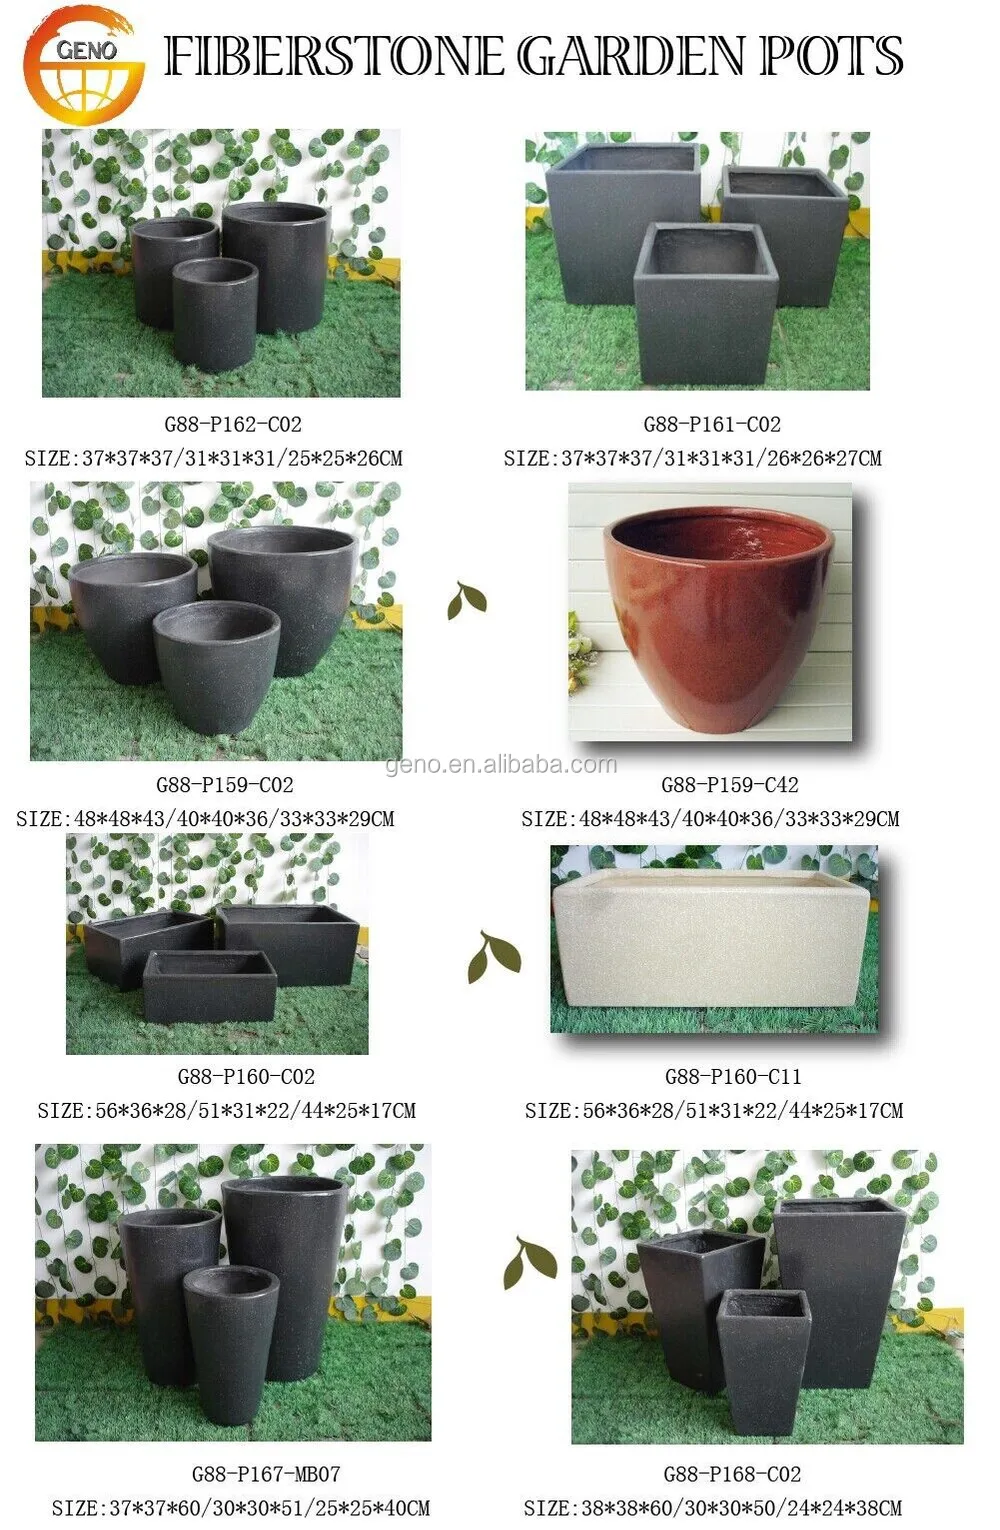 fiberclay pot catalog- GENO INDUSTRY.jpg